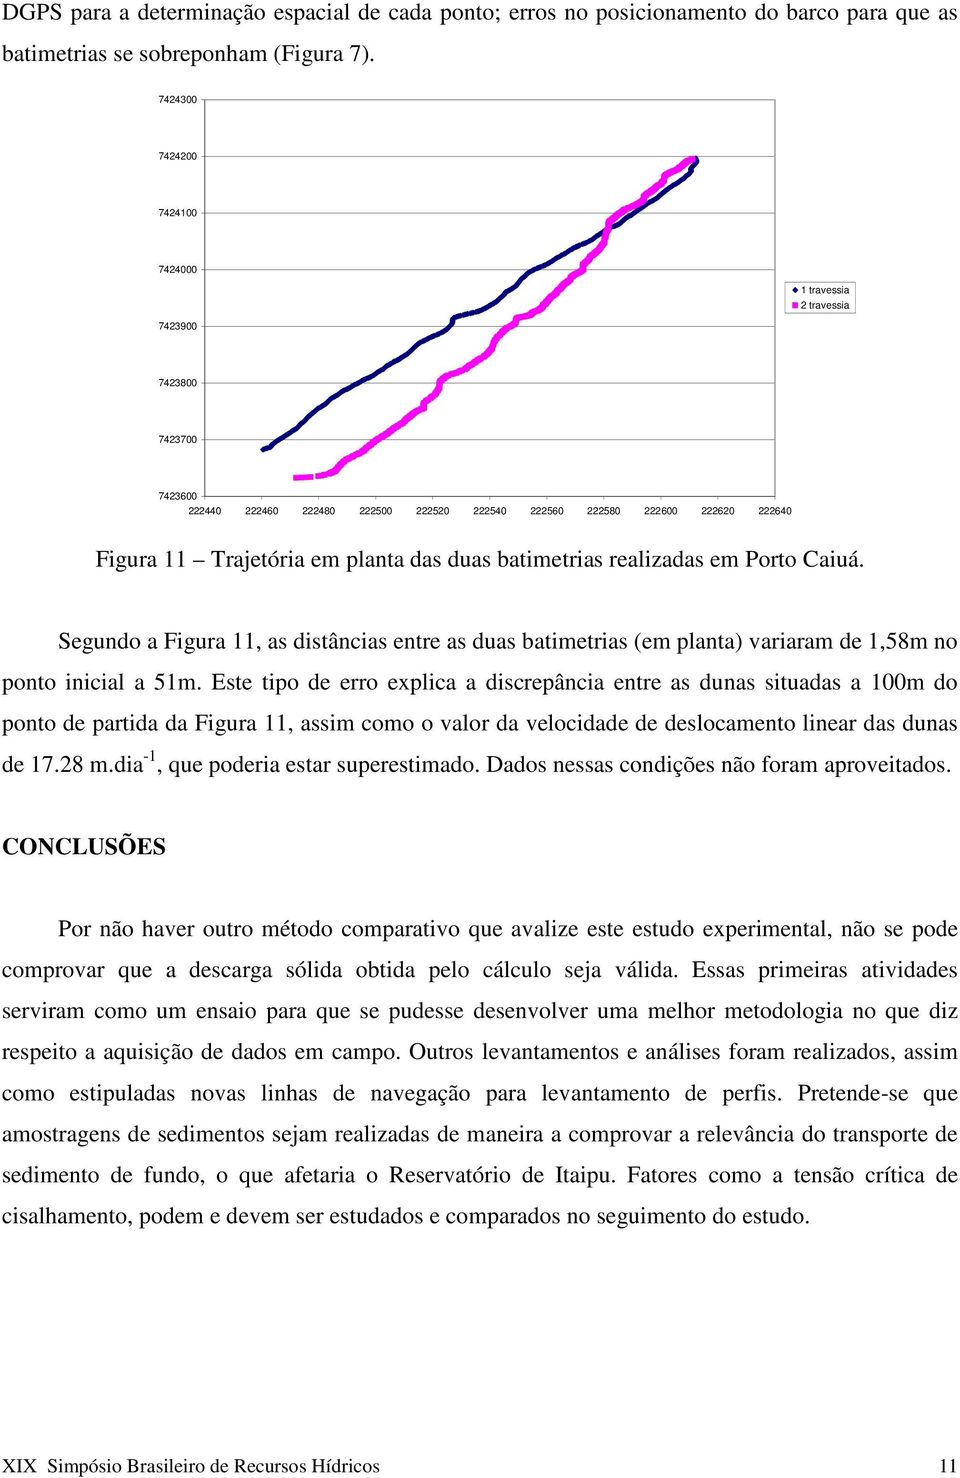 duas batimetrias realizadas em Porto Caiuá. Segundo a Figura 11, as distâncias entre as duas batimetrias (em planta) variaram de 1,58m no ponto inicial a 51m.